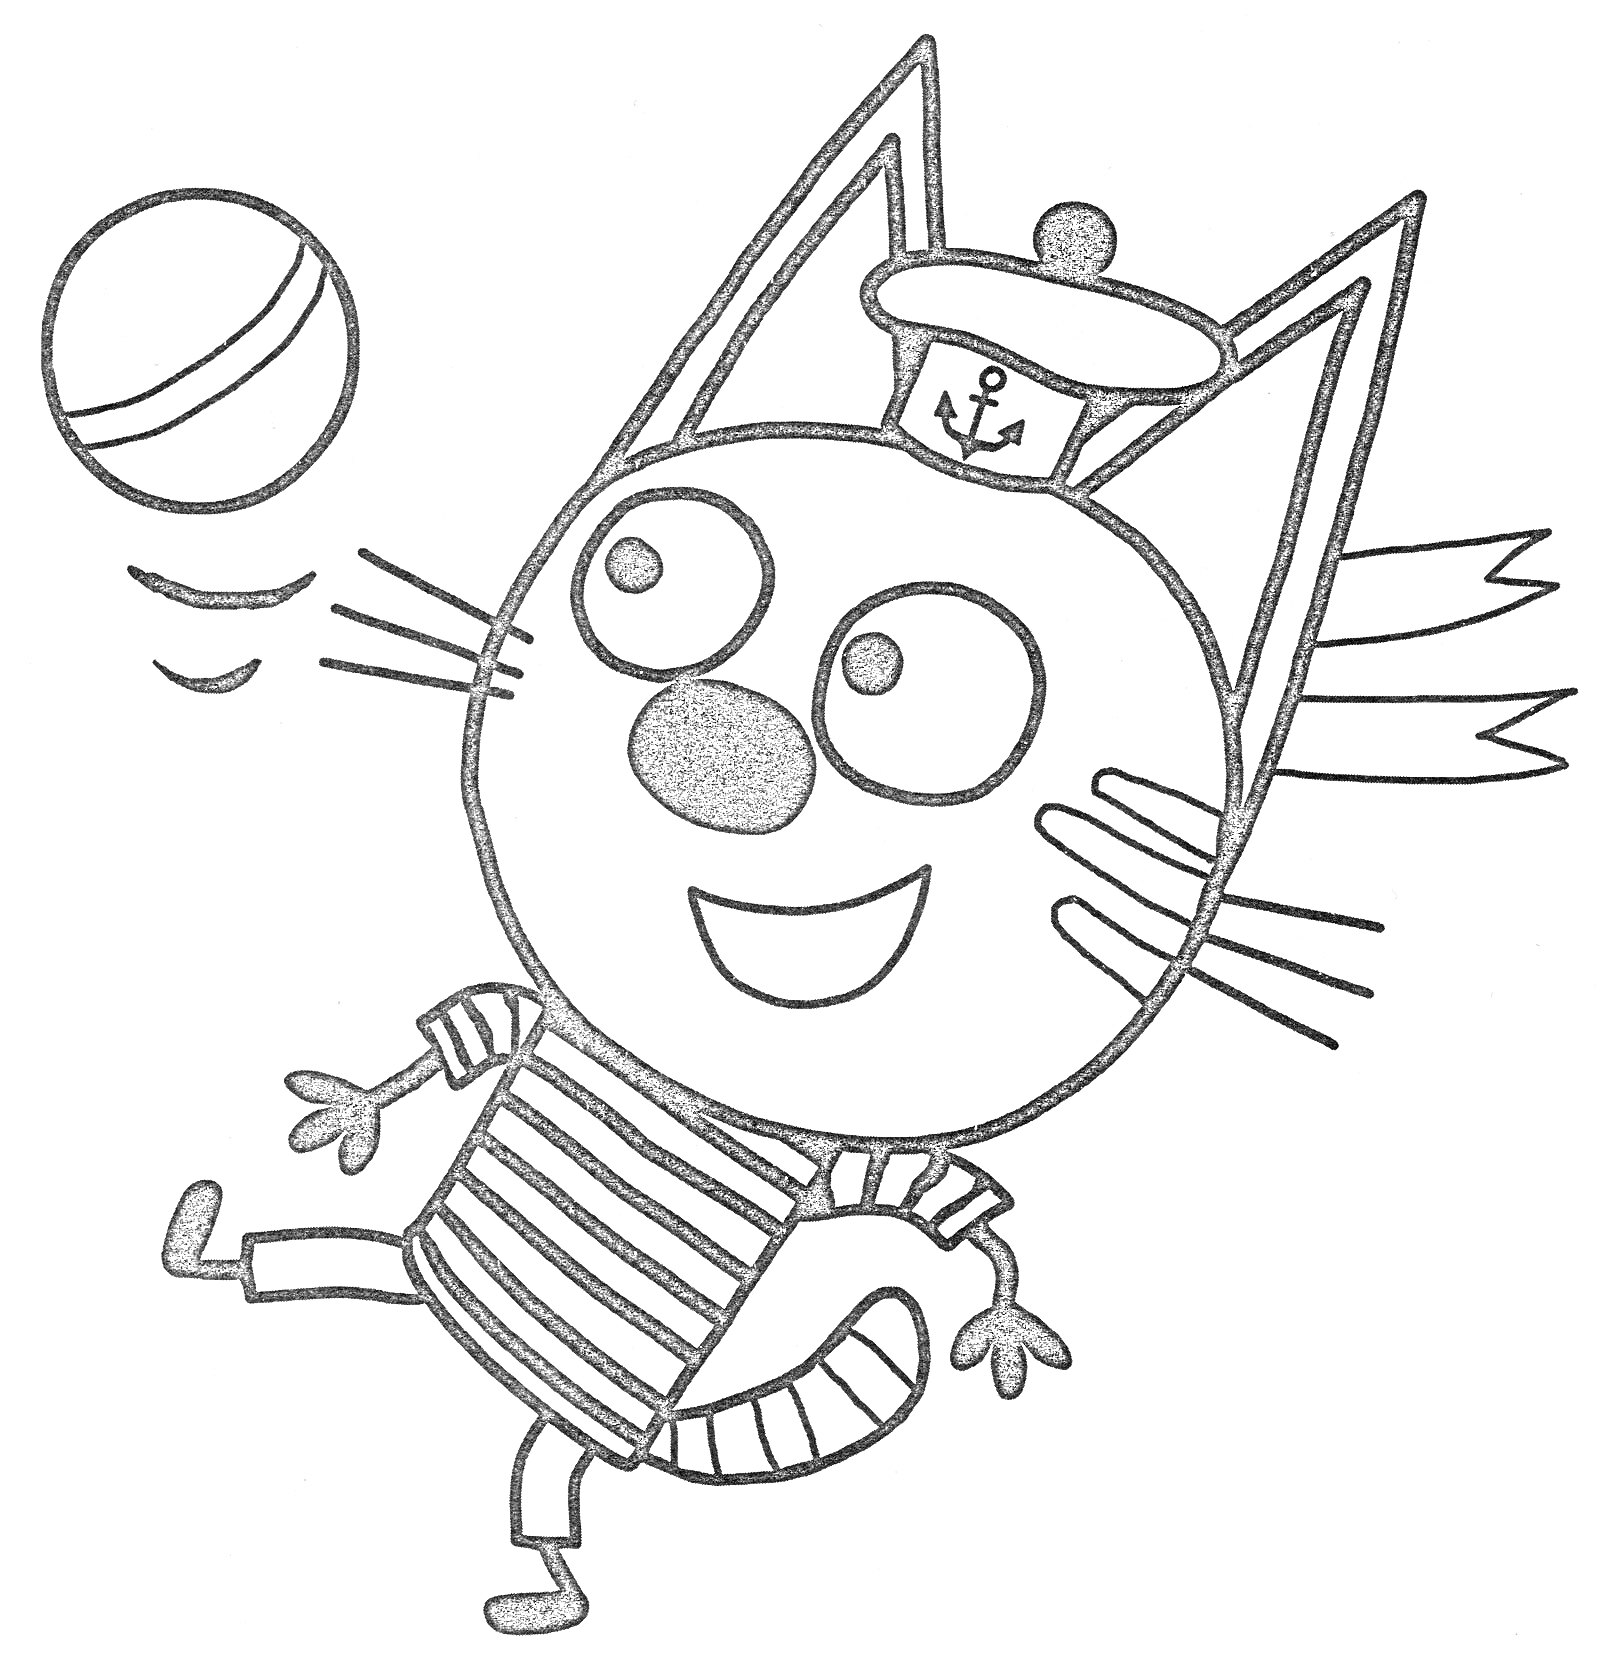 Котенок в тельняшке и шапке с якорем играет с мячом